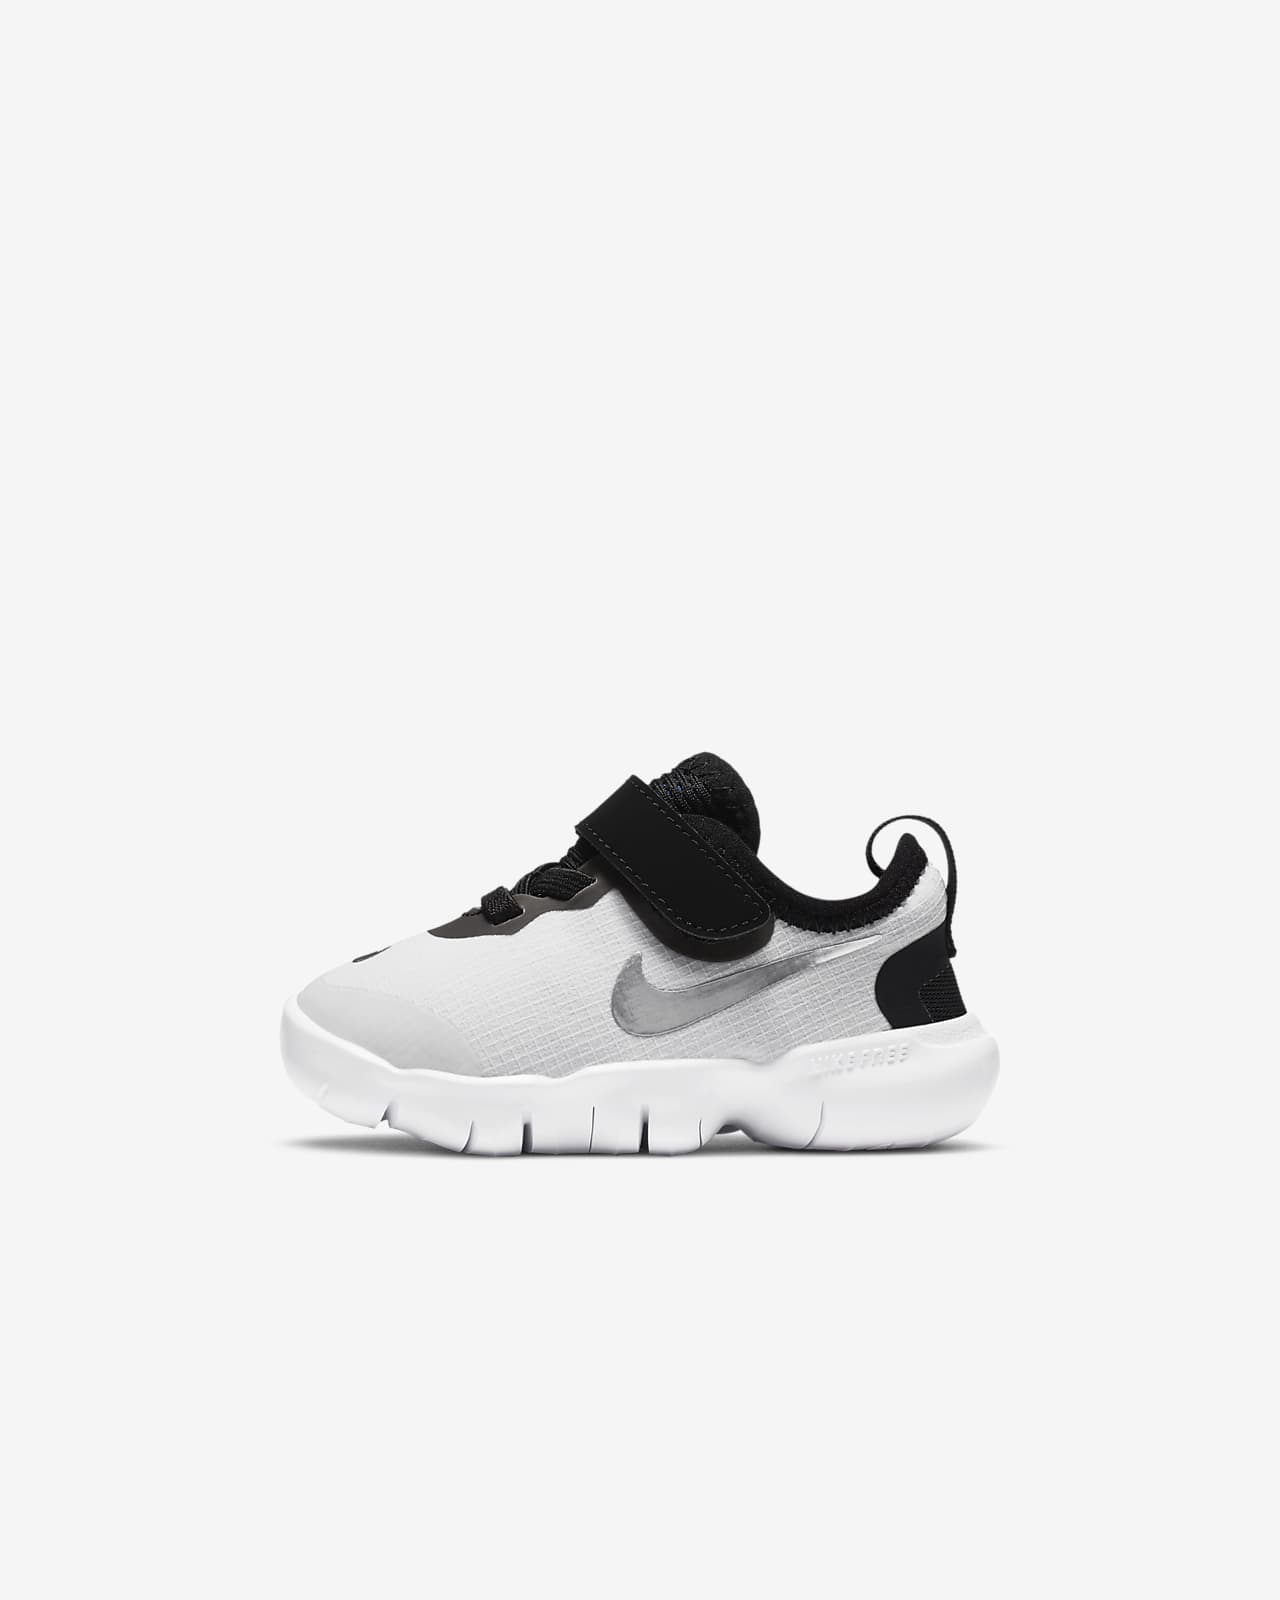 Nike Free RN 5.0 Baby/Toddler Shoe 